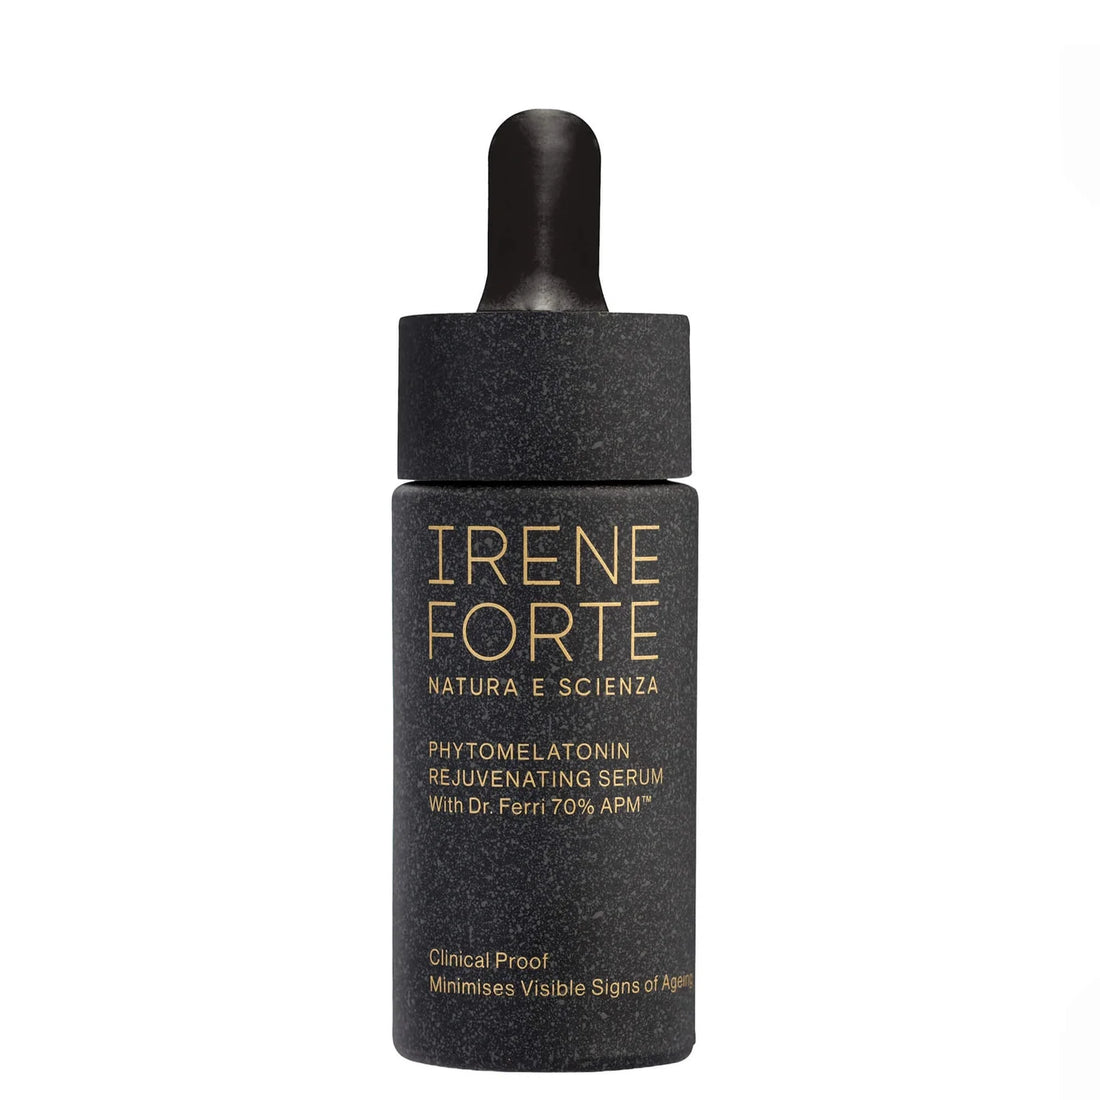 Irene Forte Phytomelatonin Rejuvenating serum 15ml